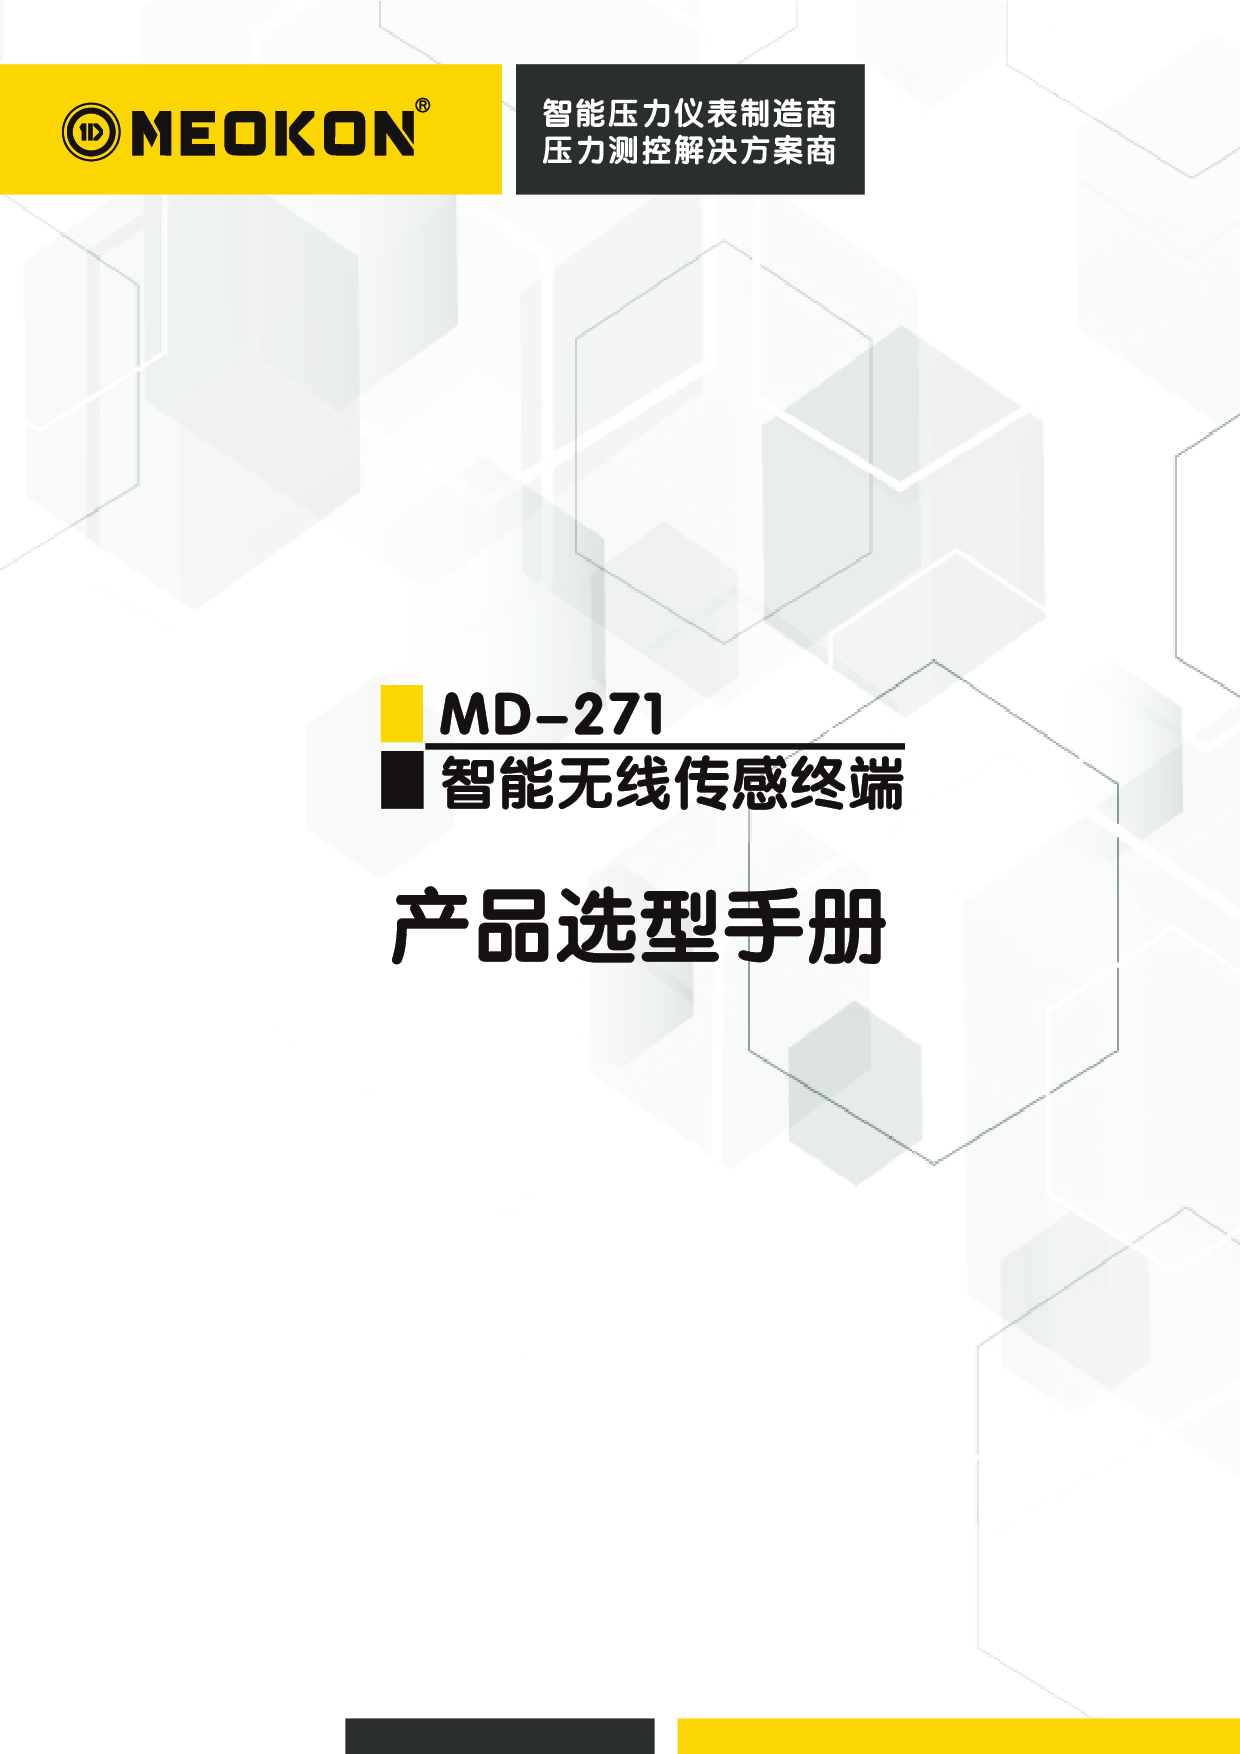 上海铭控MD-S271智能无线传感终端图片